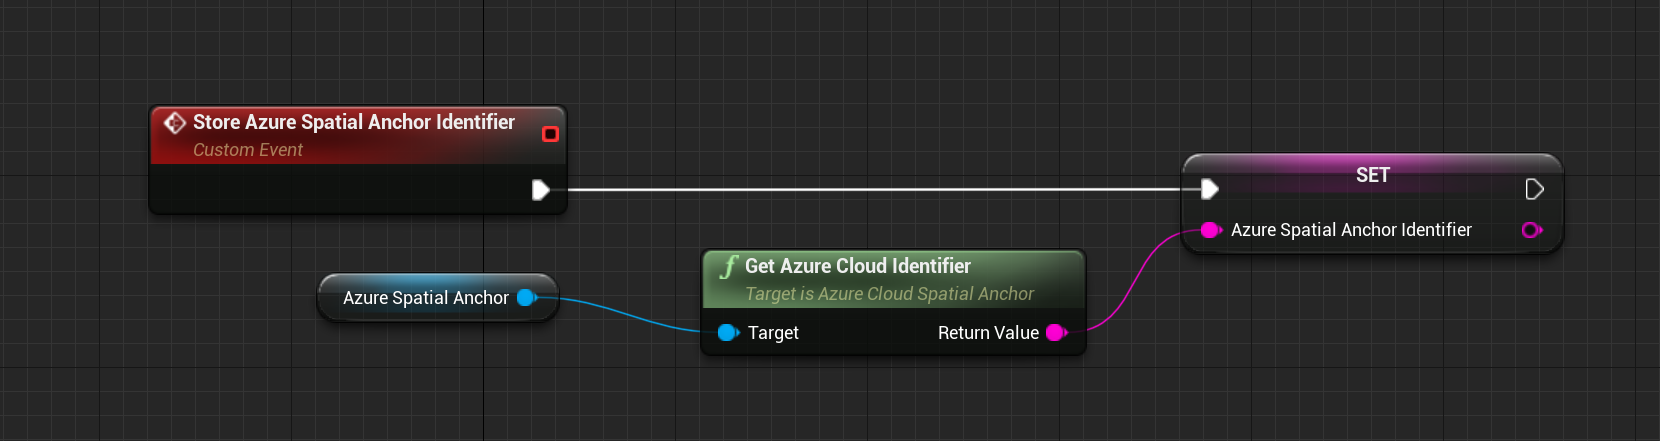 使用取得 Azure 雲端識別碼函式的儲存 Azure Spatial Anchors 識別碼自訂事件的藍圖